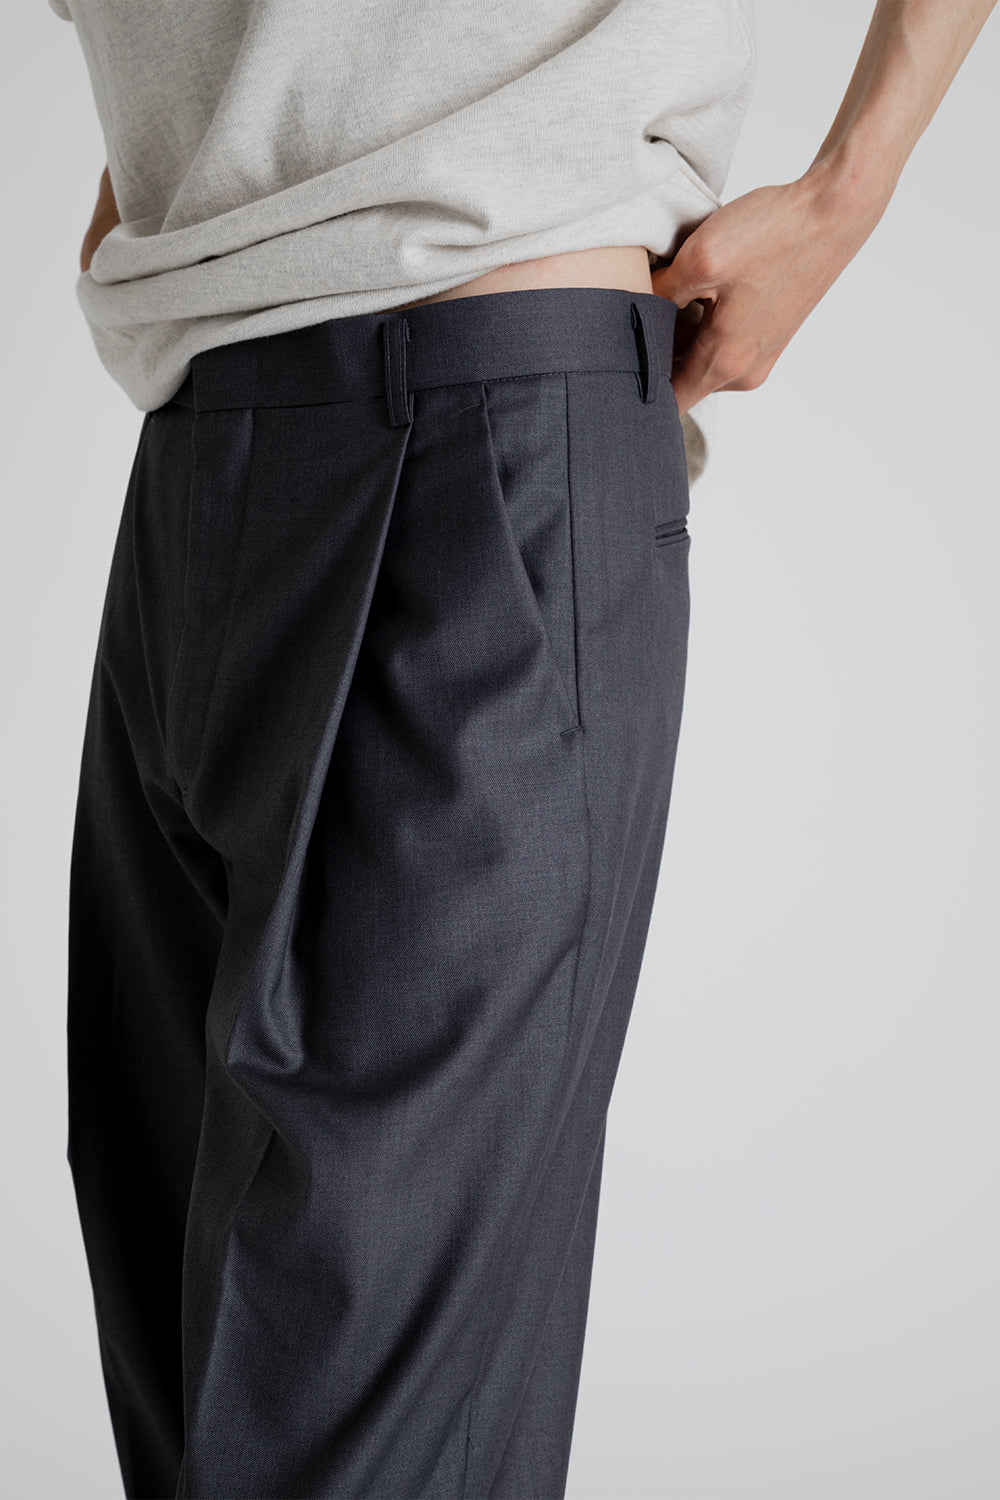 Frizmworks OG One Tuck Wide Slack Pants in Charcoal